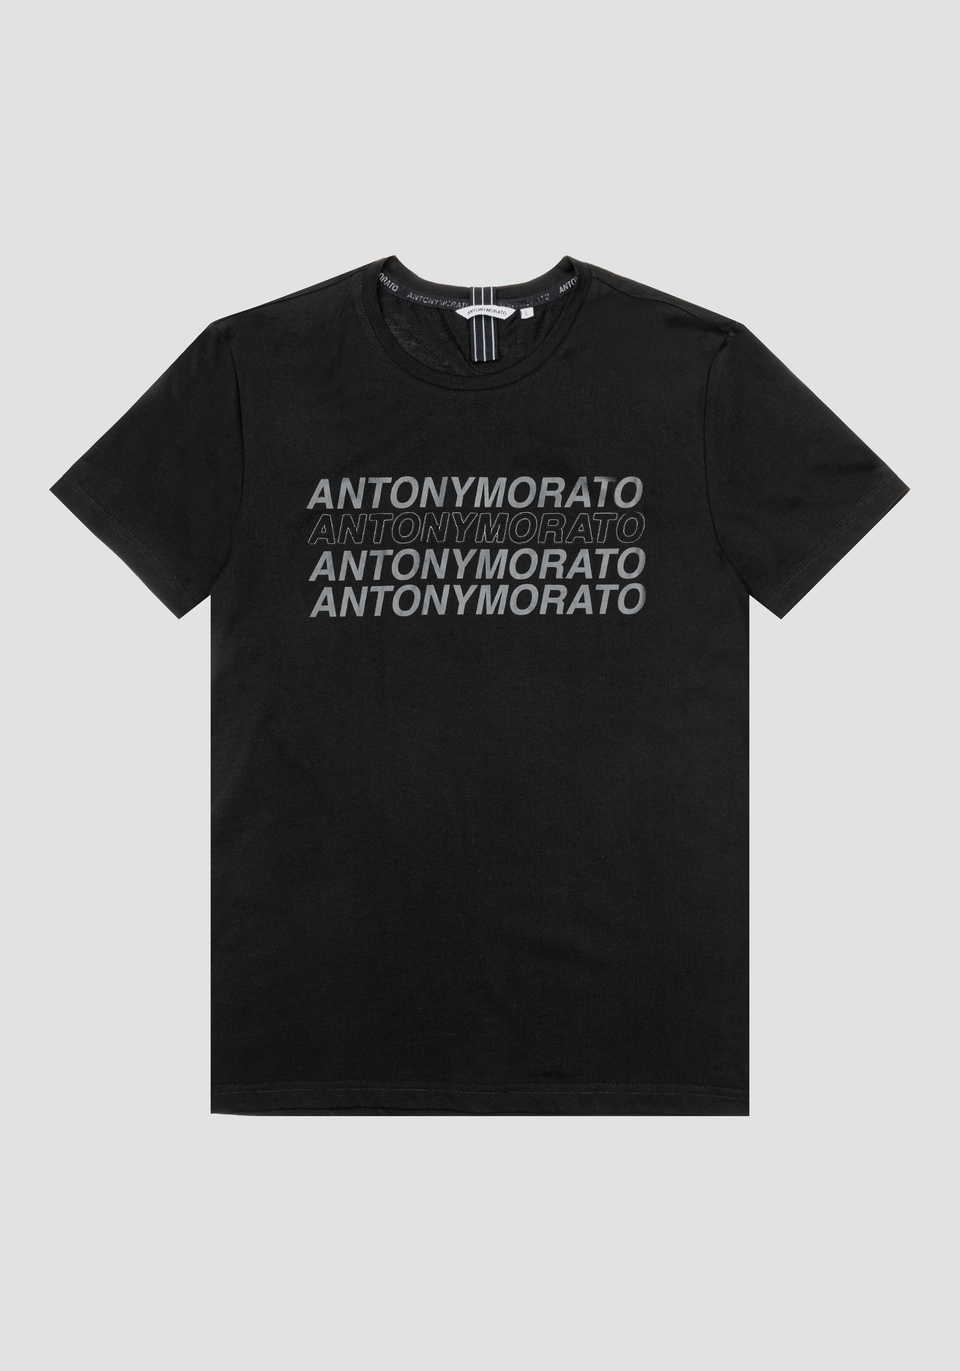 T-SHIRT SLIM FIT AUS WEICHER BAUMWOLLE MIT PRINT - Antony Morato Online Shop